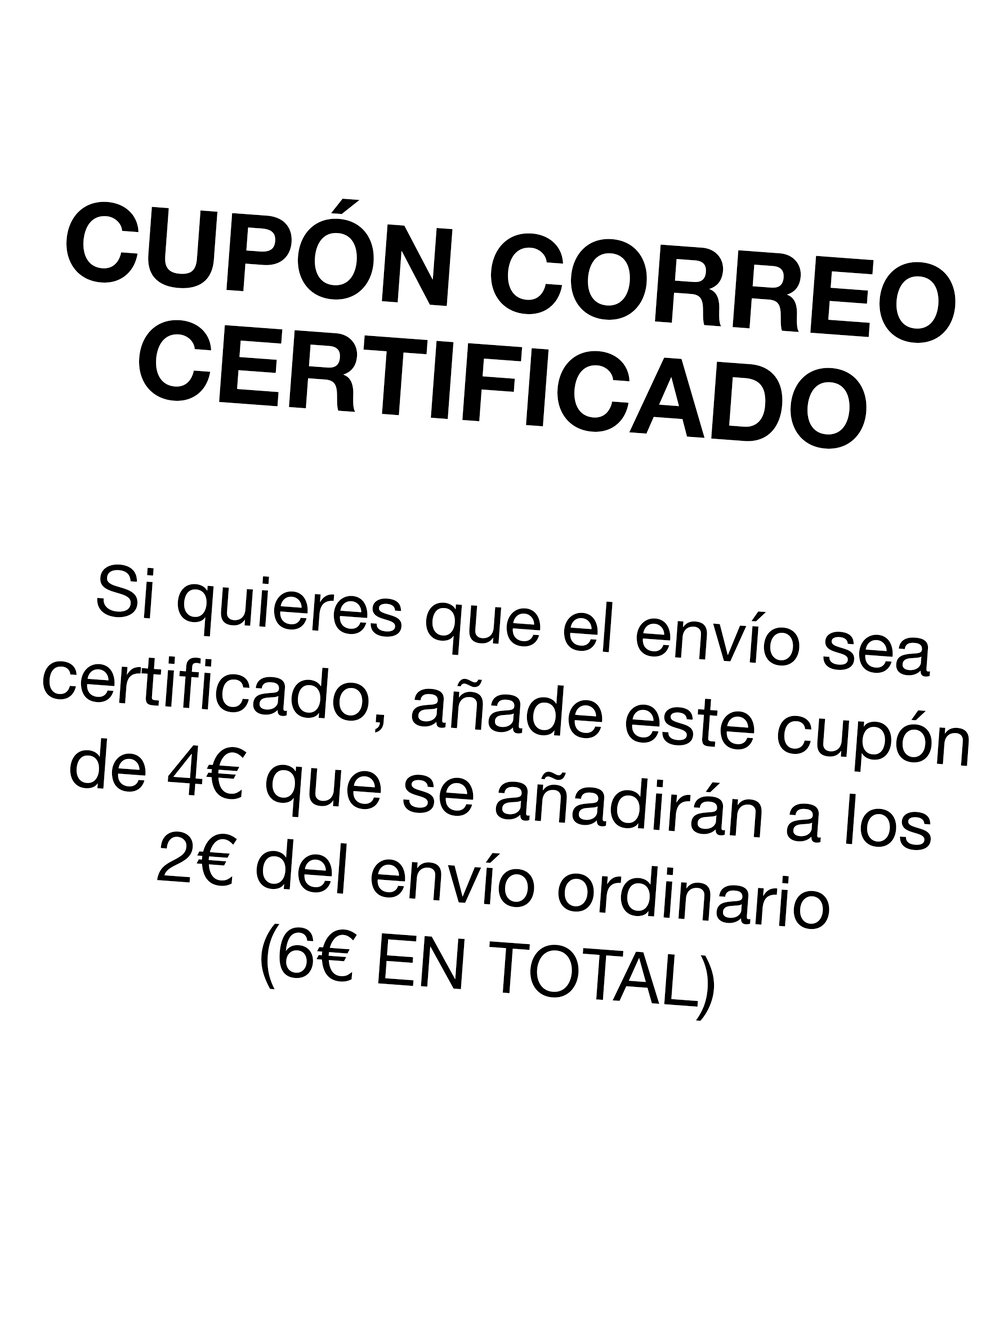 Image of CUPÓN CORREO CERTIFICADO